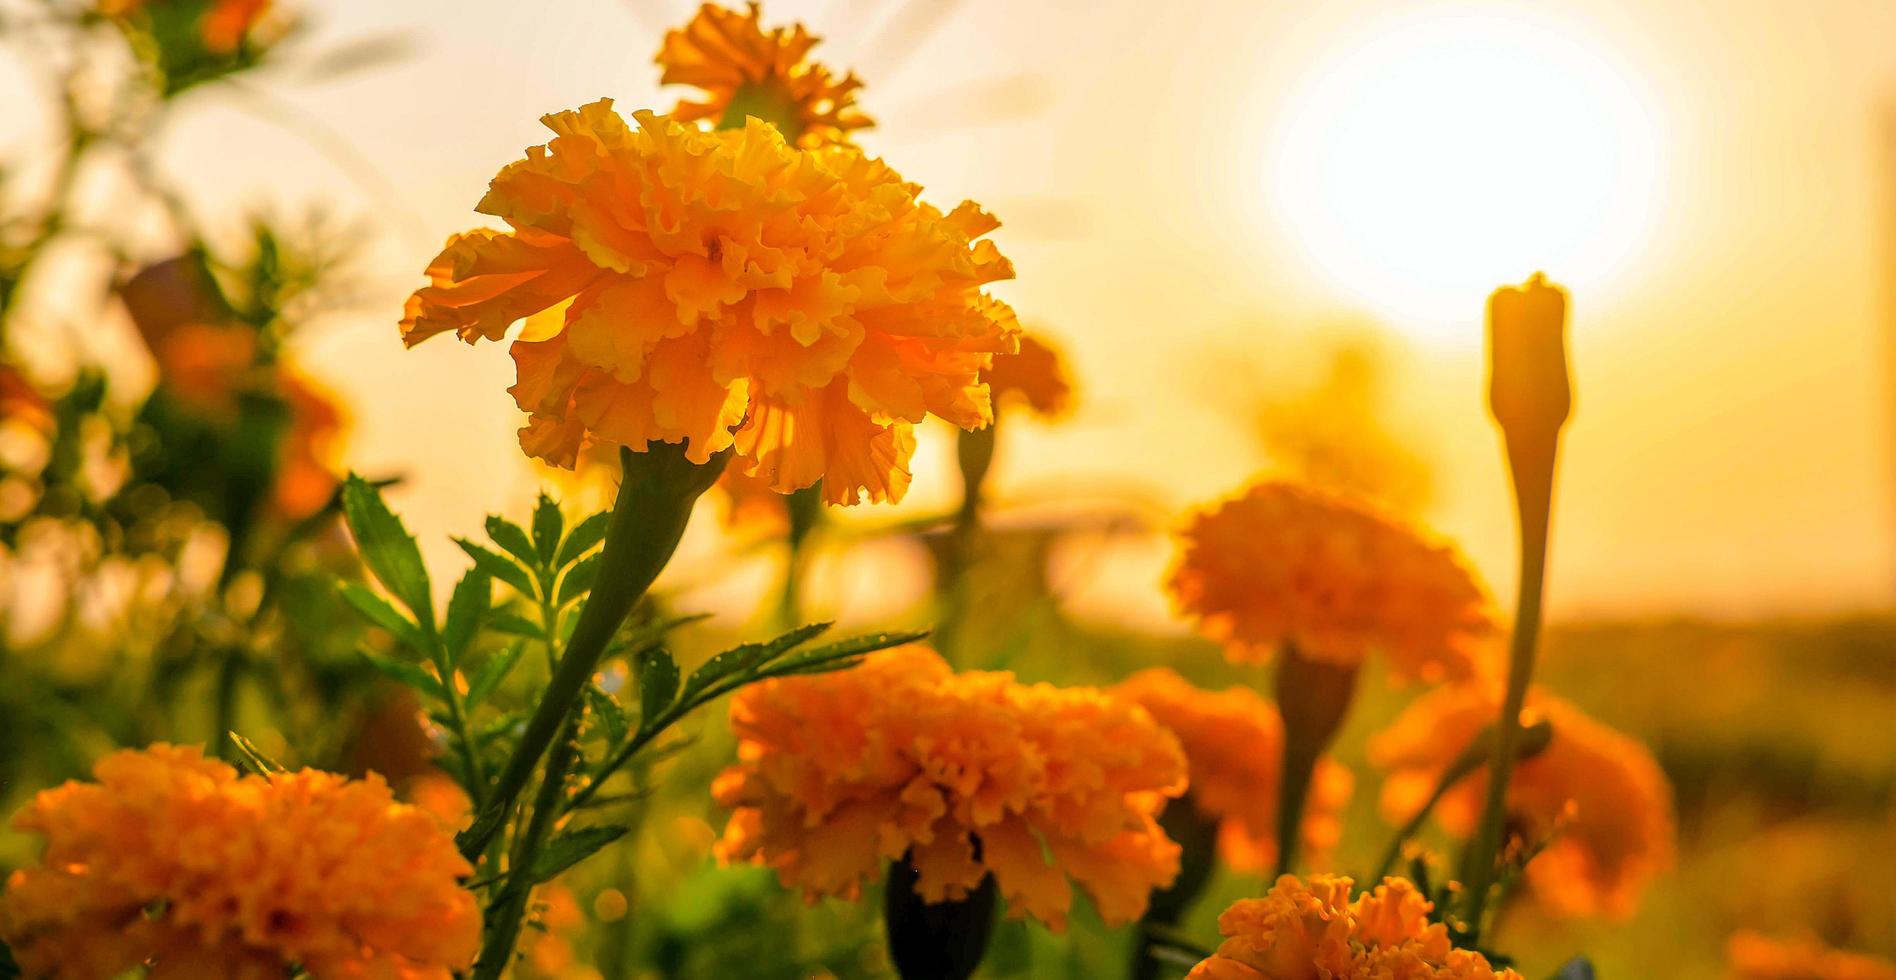 schönes feld der blühenden ringelblumenblume gegen sonnenuntergang goldenes licht und verschwommenes weiches zehn ringelblumenfeld natürlicher hintergrund foto